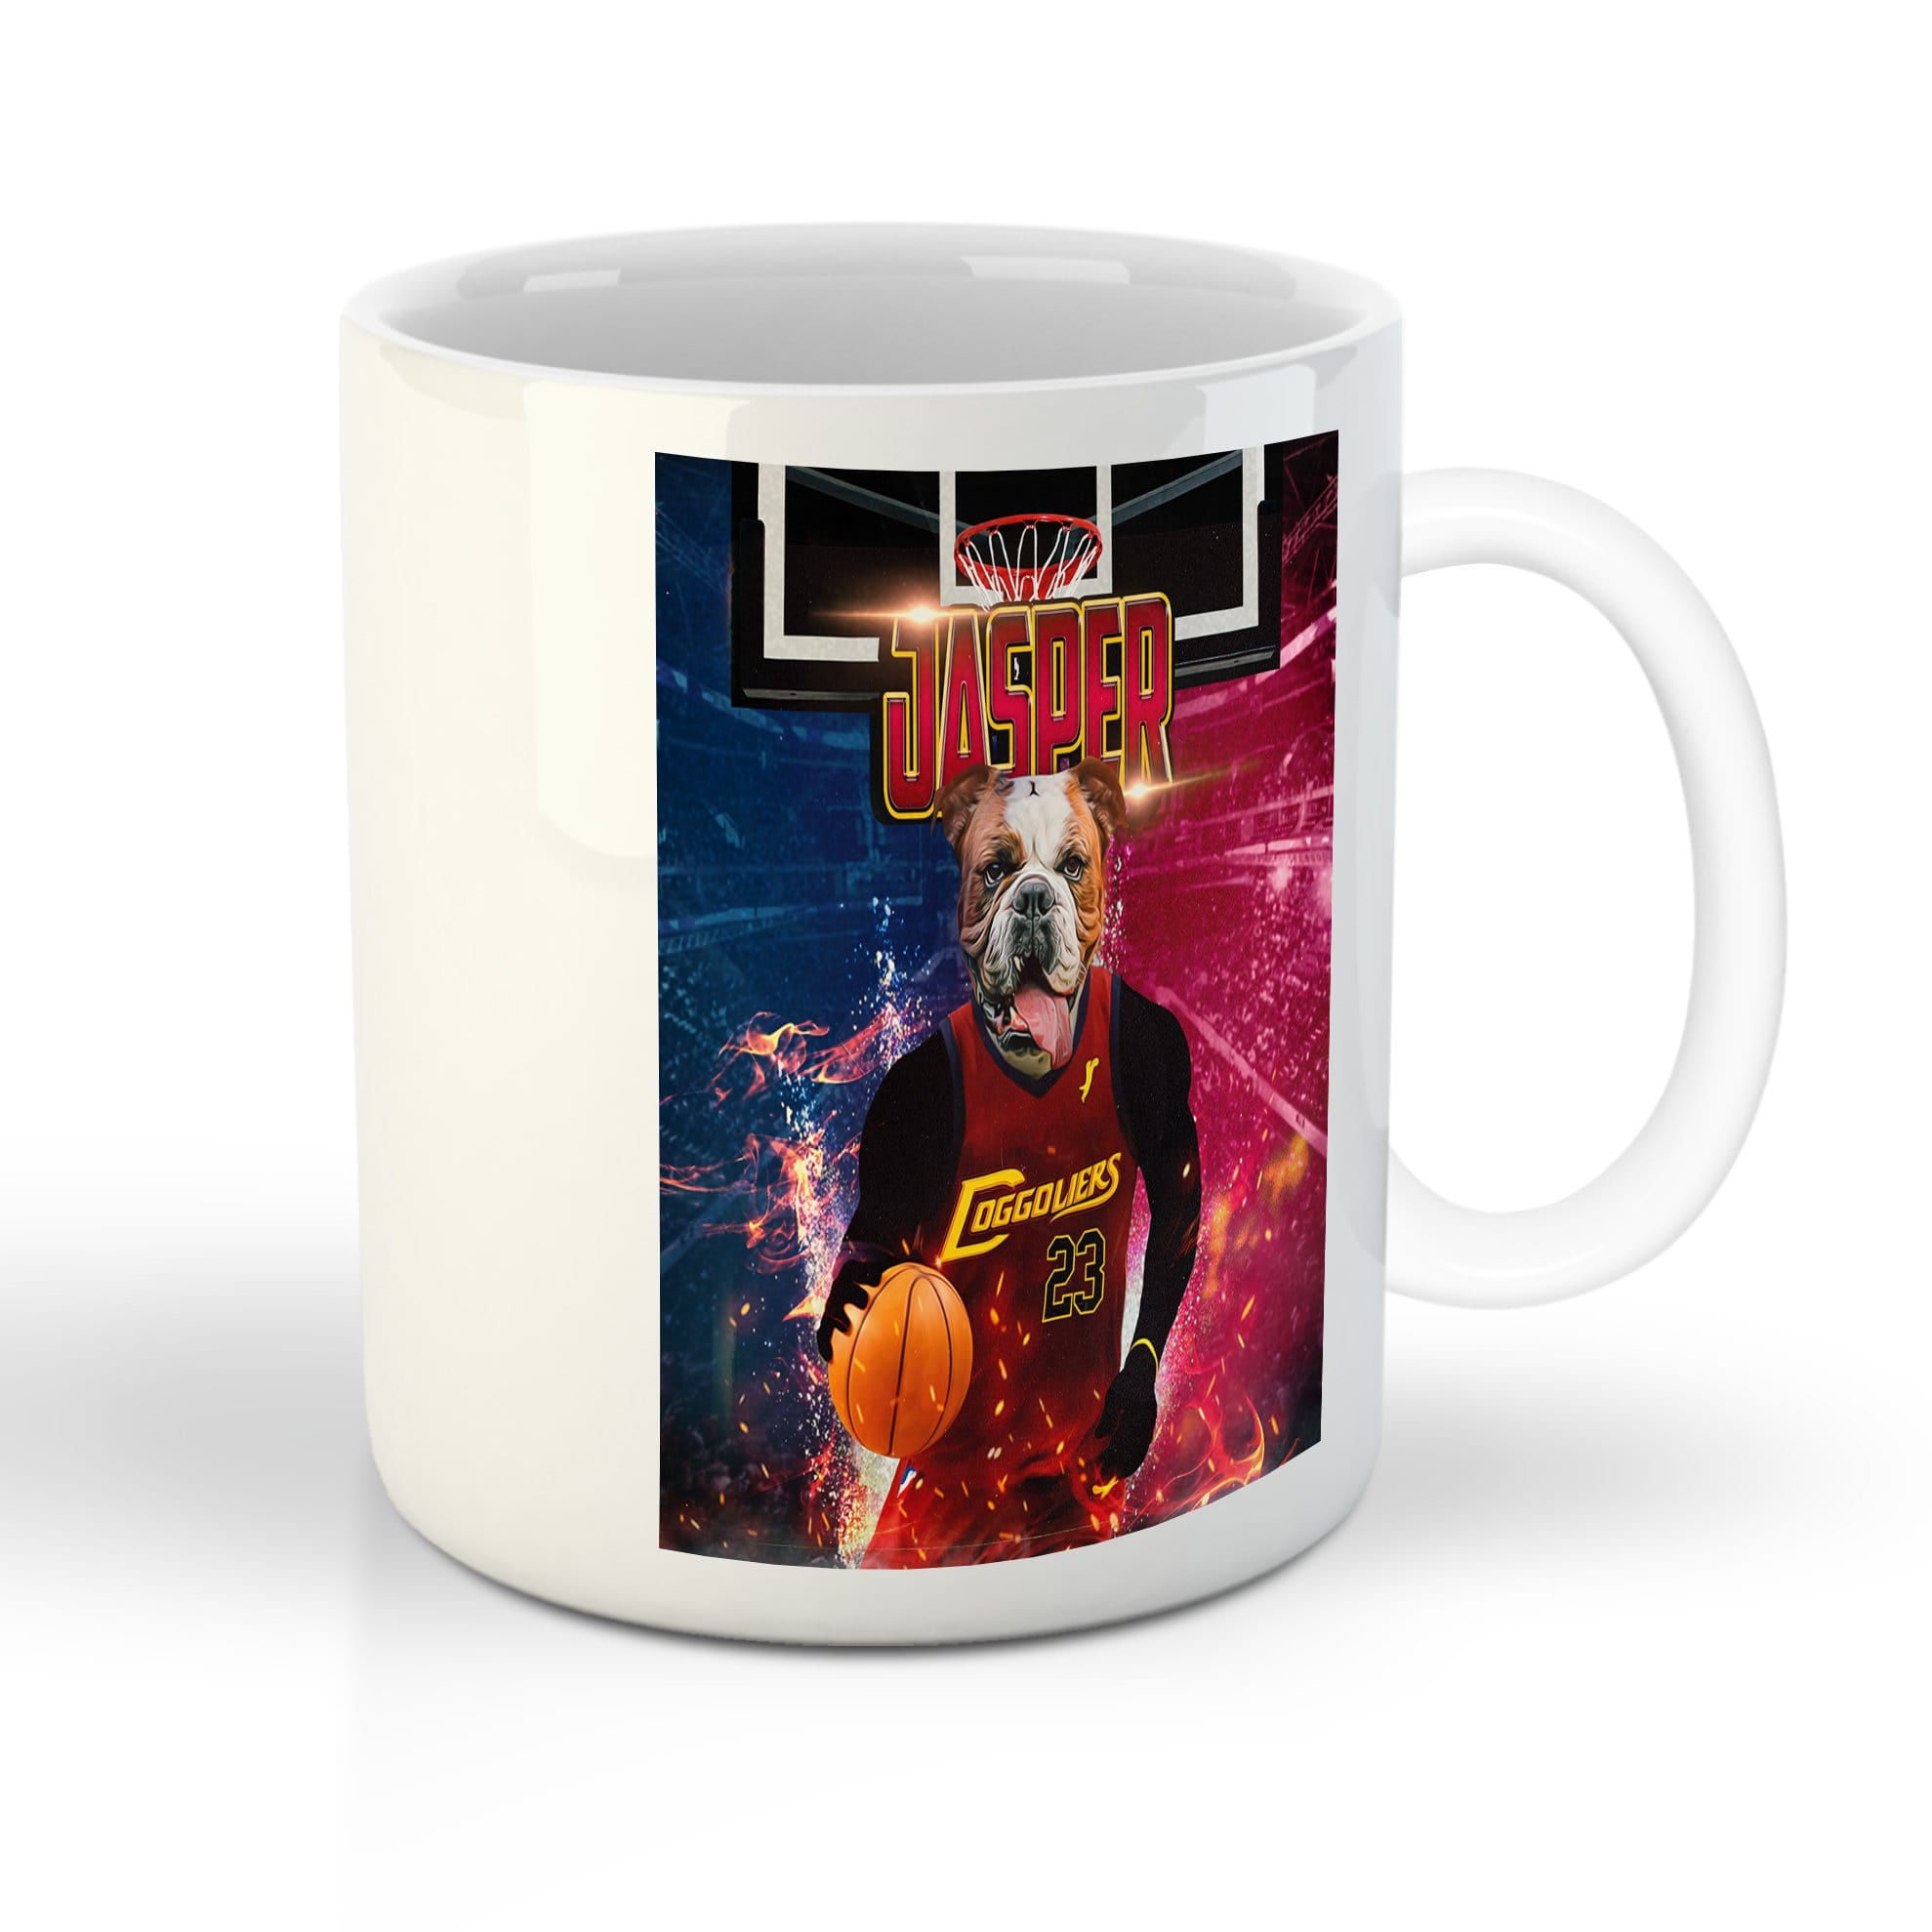 &#39;Cleveland Doggoliers&#39; Personalized Pet Mug